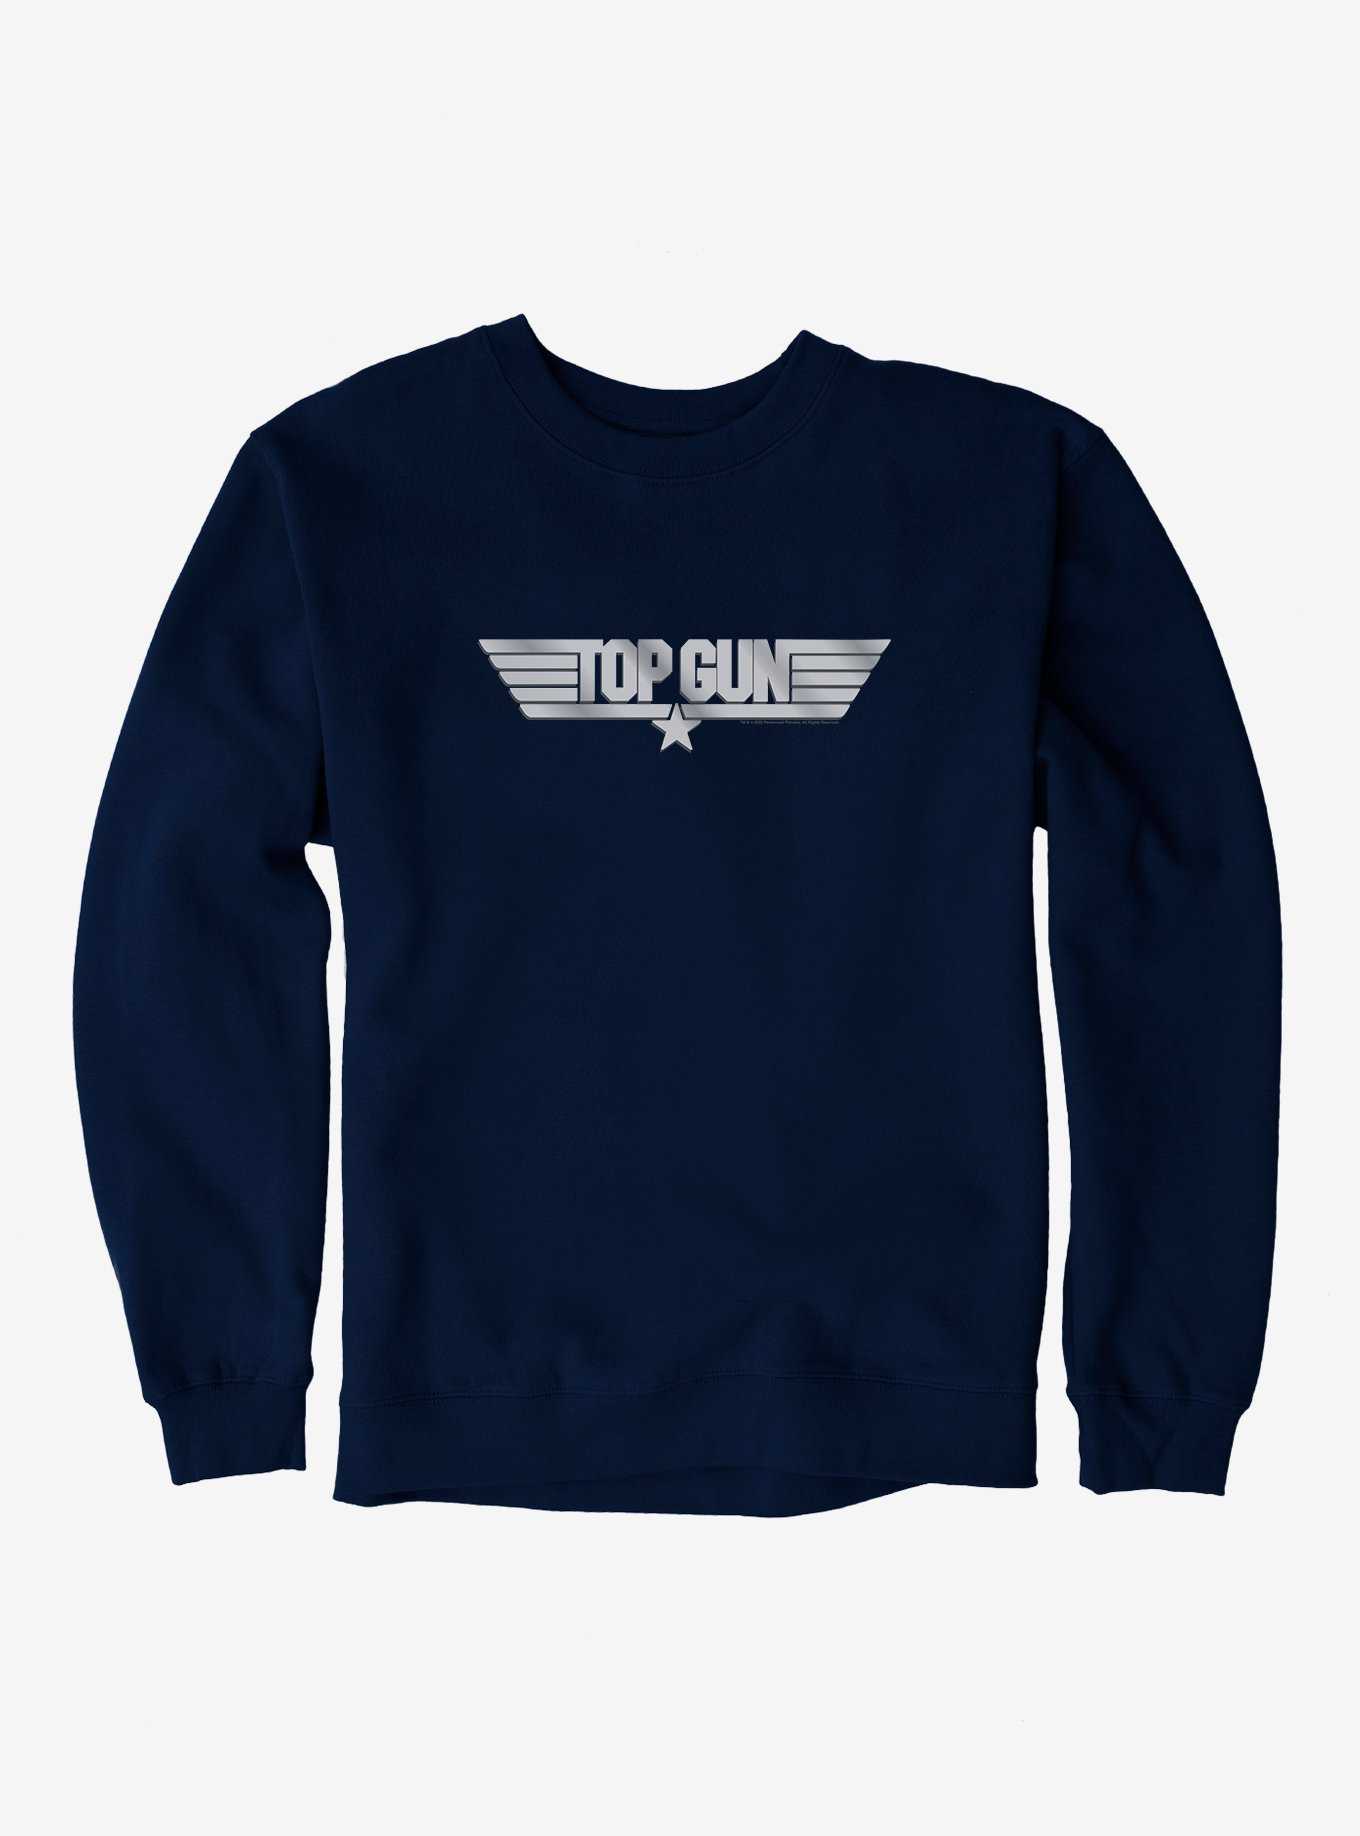 OFFICIAL Top Gun Merchandise Shirts Topic & | Hot